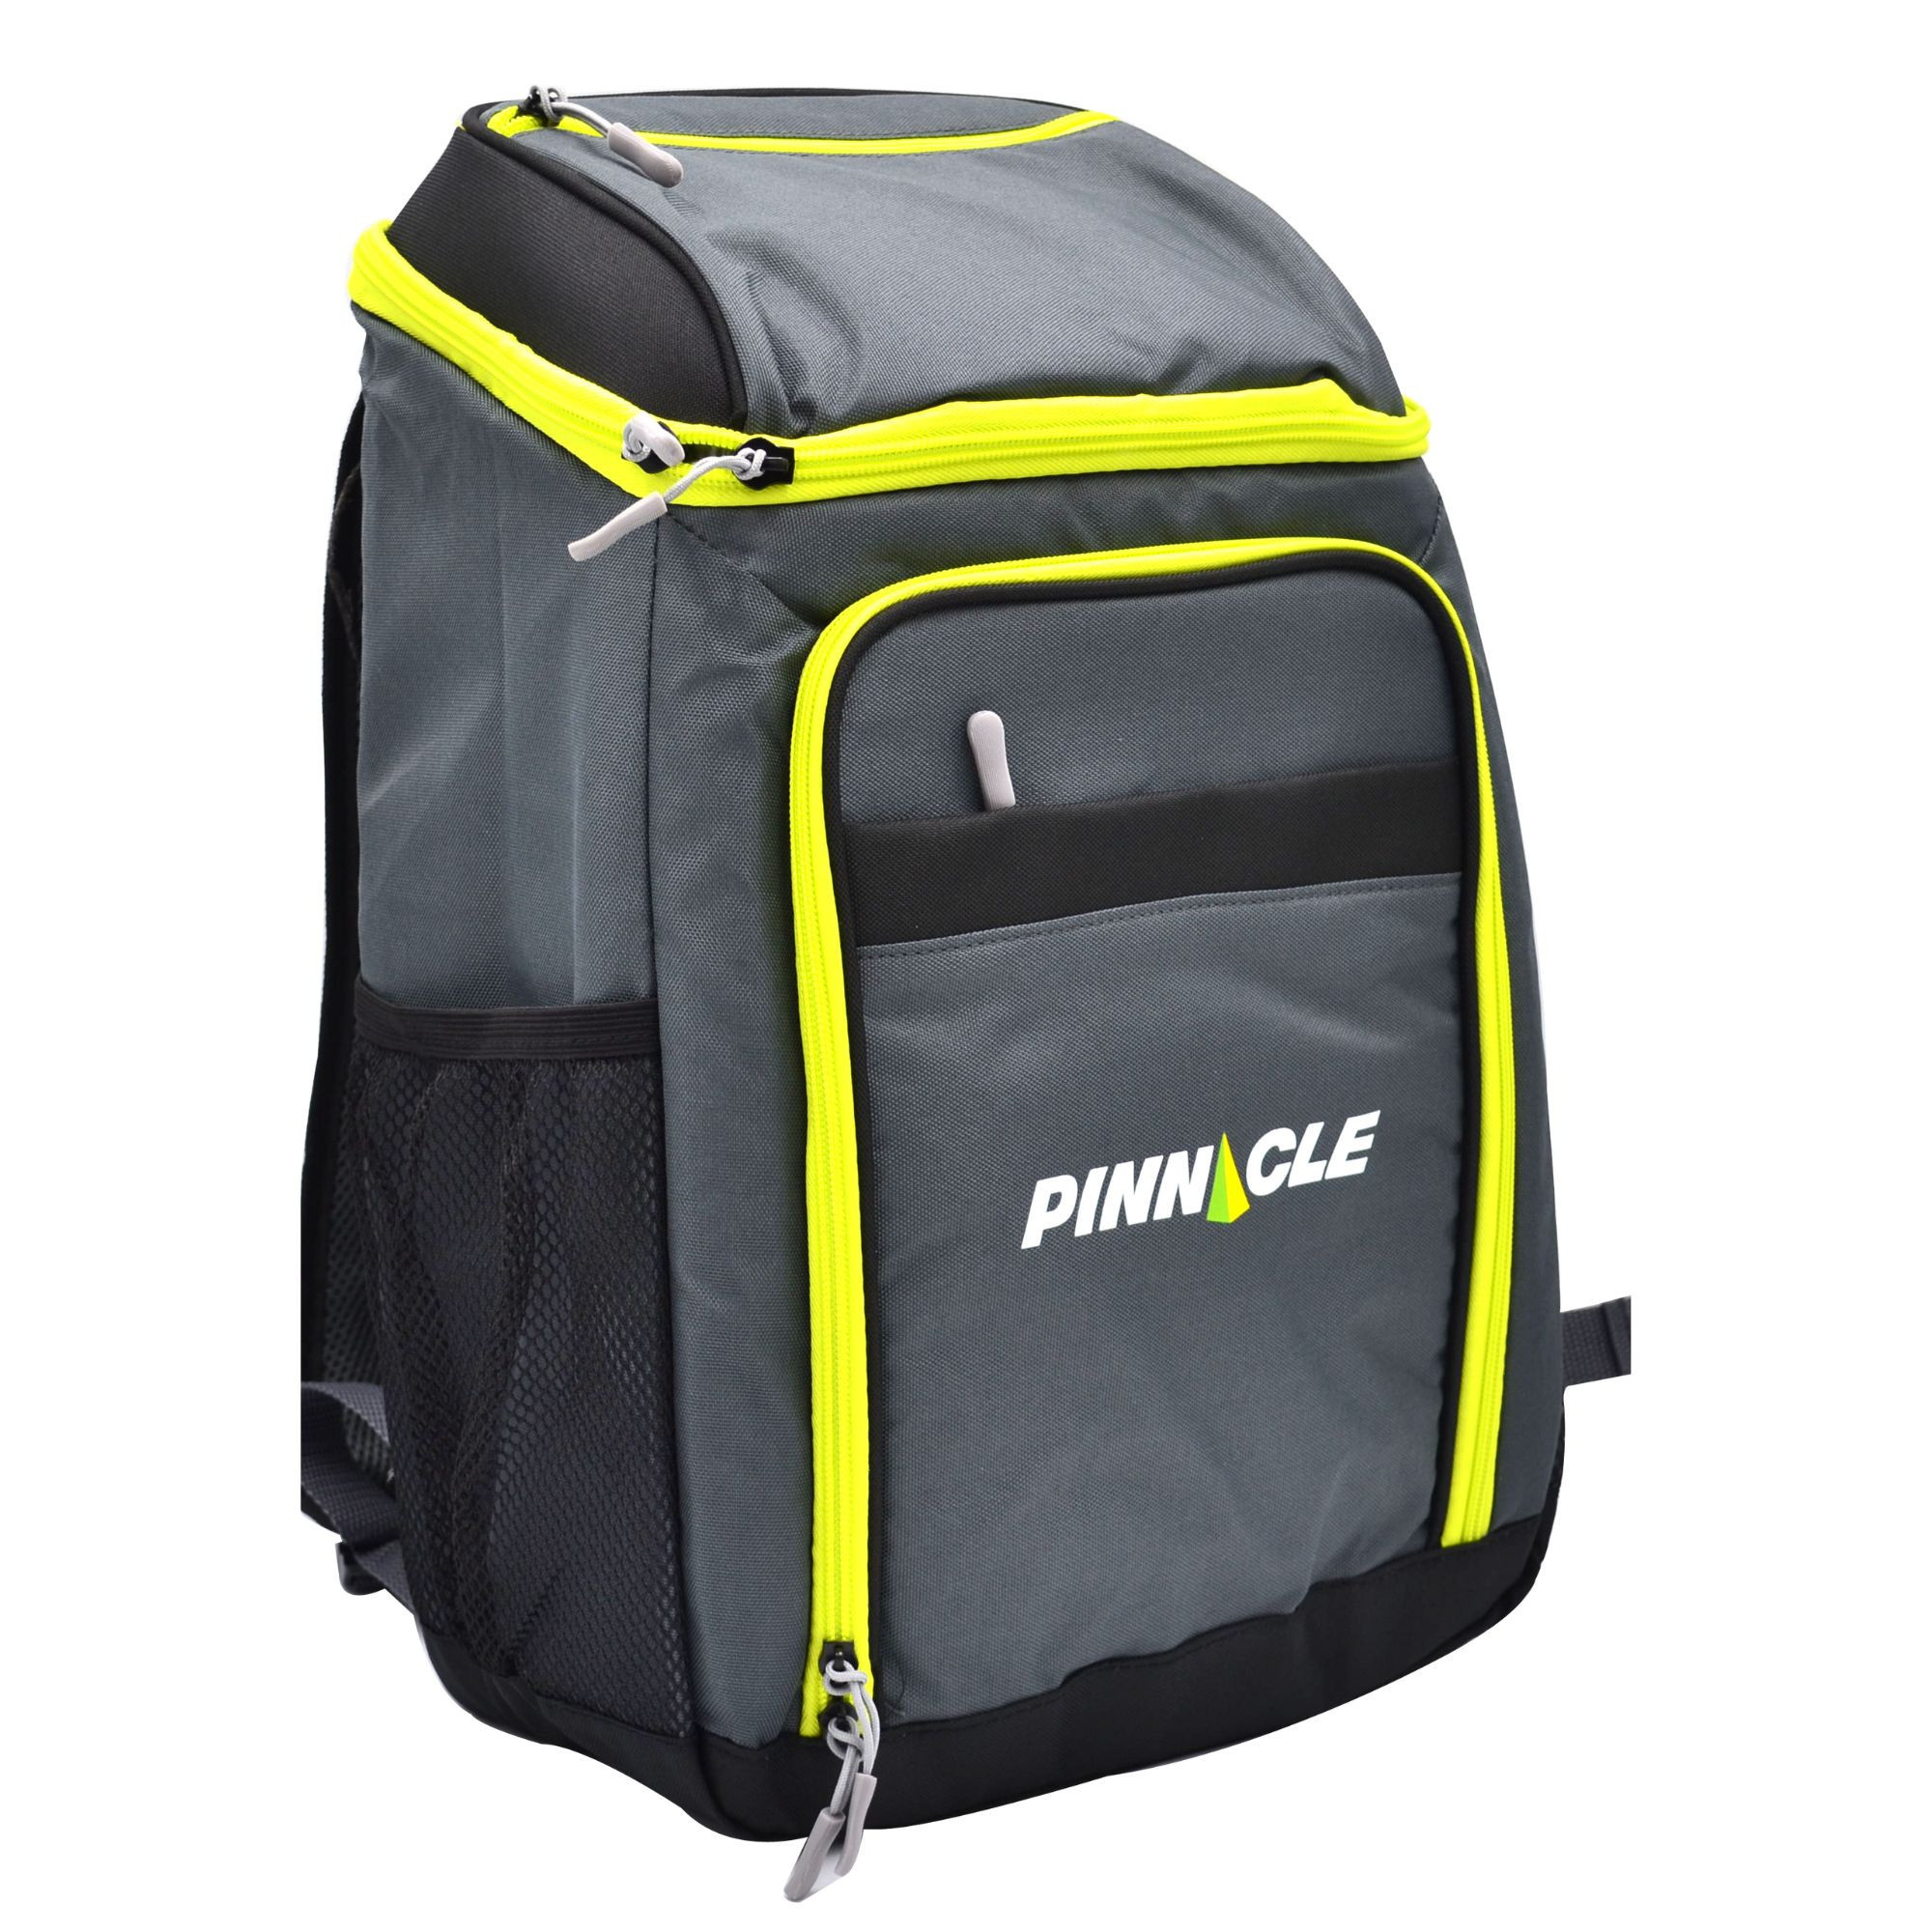 WINSOR Cooler Bag 24.7L/24 CANS